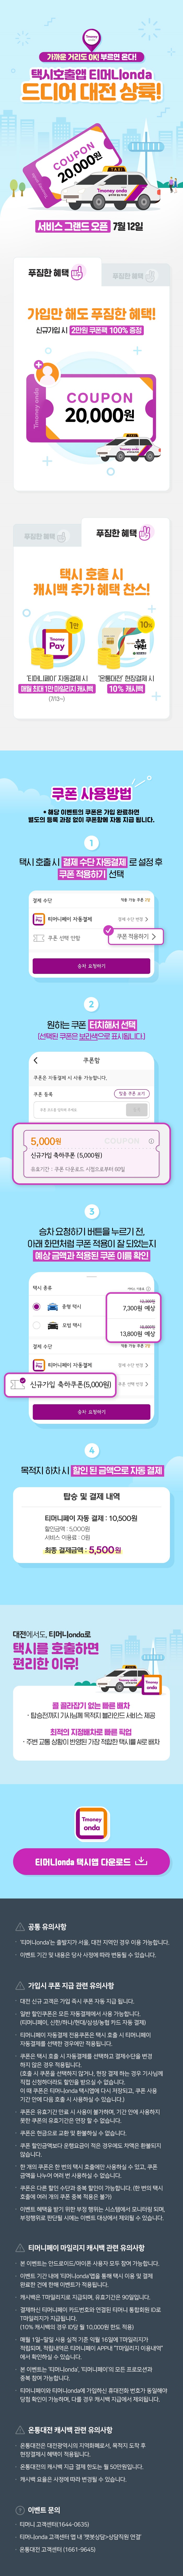 택시 쿠폰팩 2만원+캐시백 혜택! - 티머니onda 대전 서비스 오픈